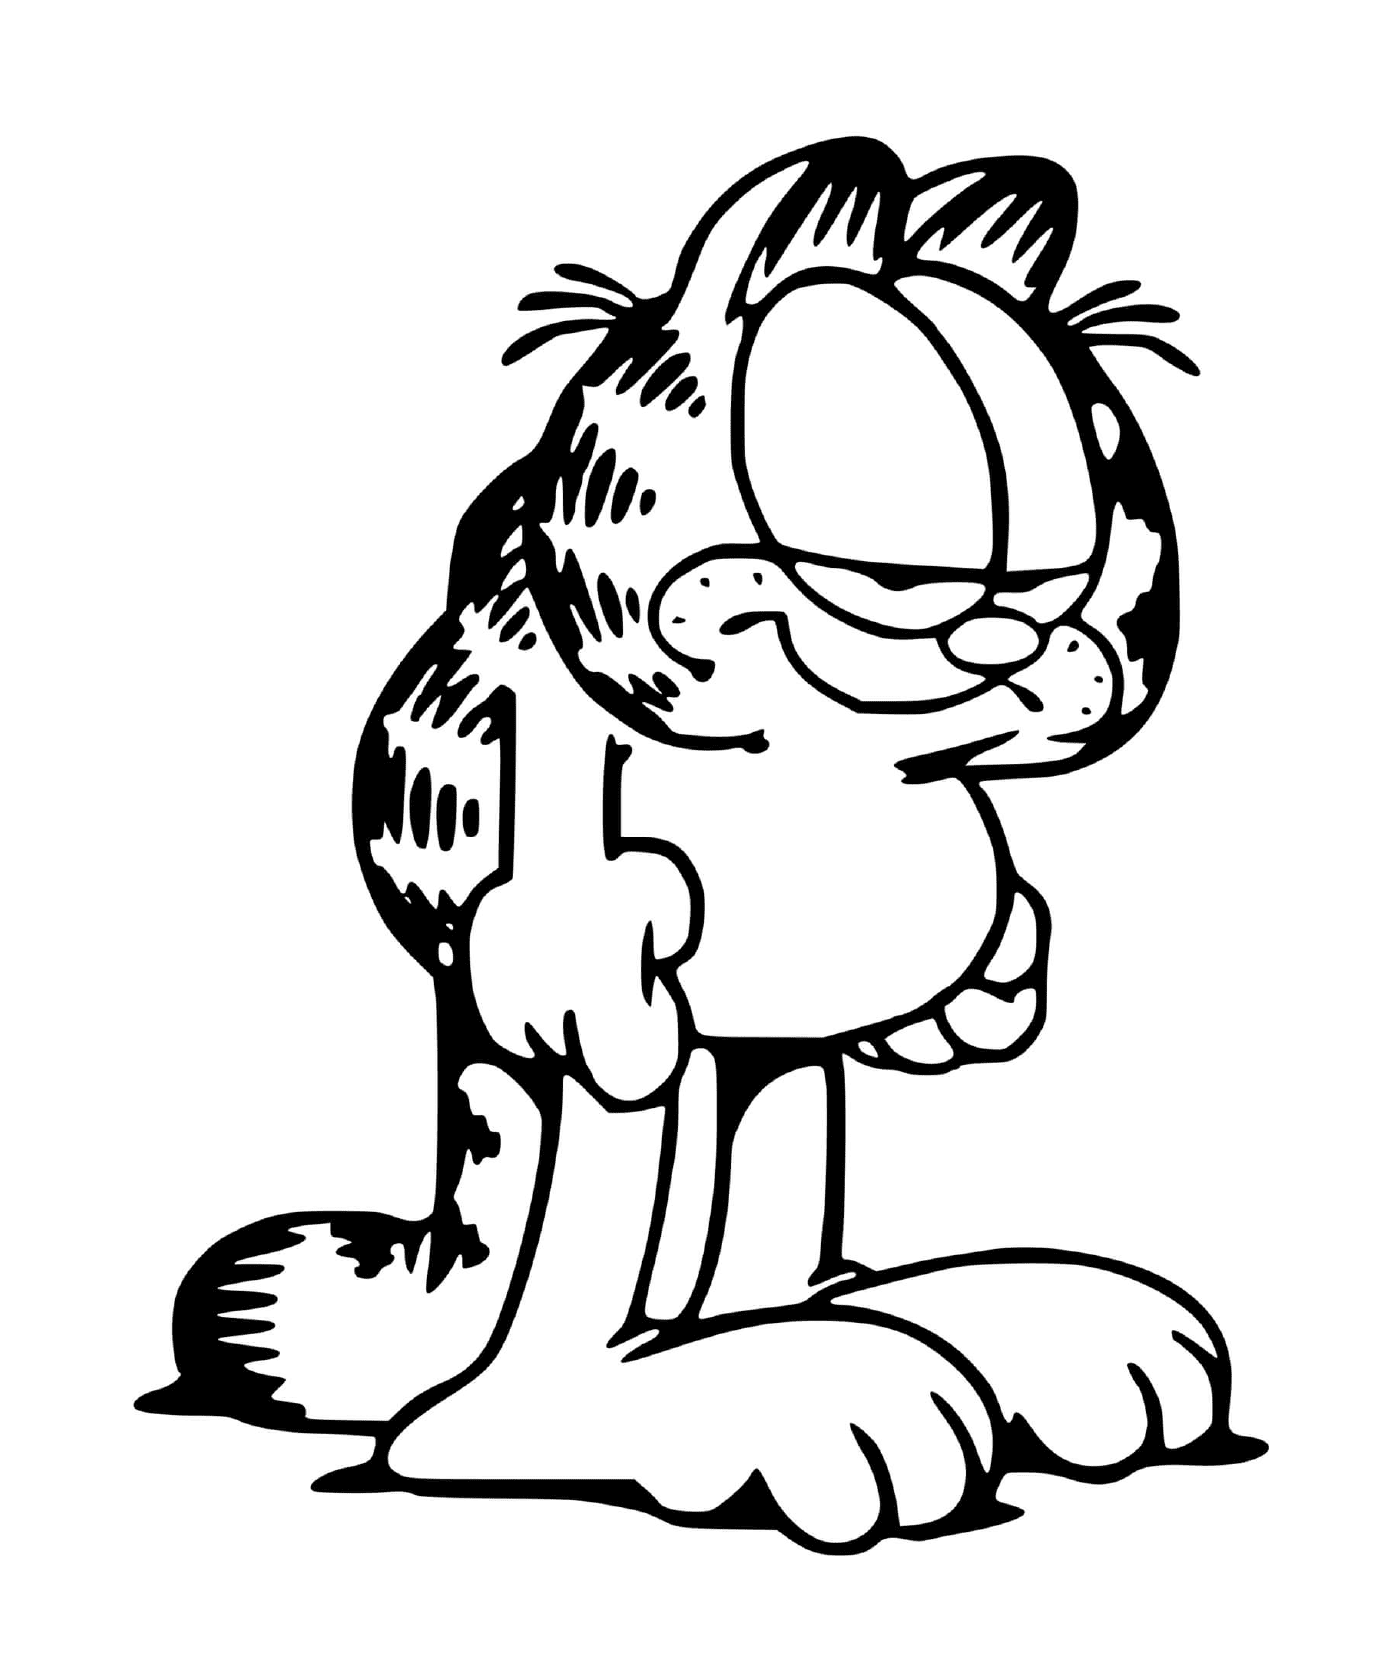   Garfield toujours fatigué et épuisé 